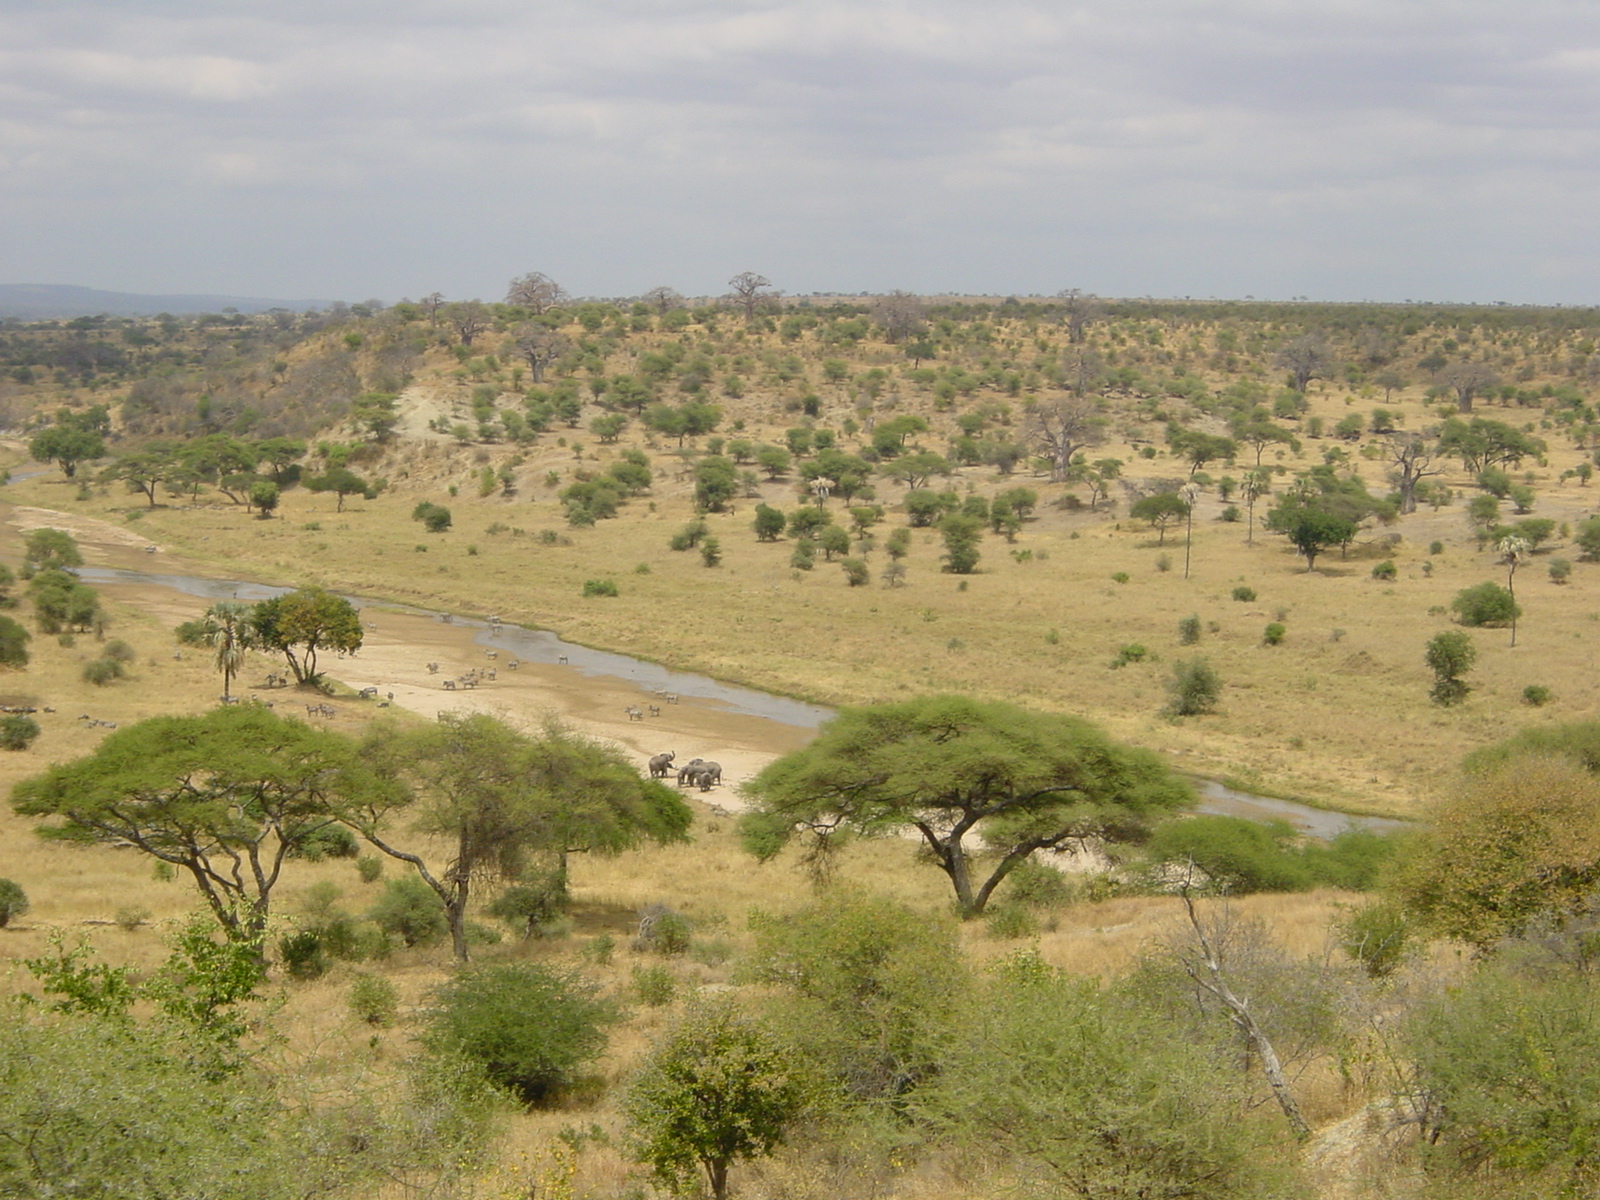 Климат редколесья южной америки. Национальный парк Тарангире в Танзании. Саванны Льянос. Саванны Льянос климат. Редколесья Африки.